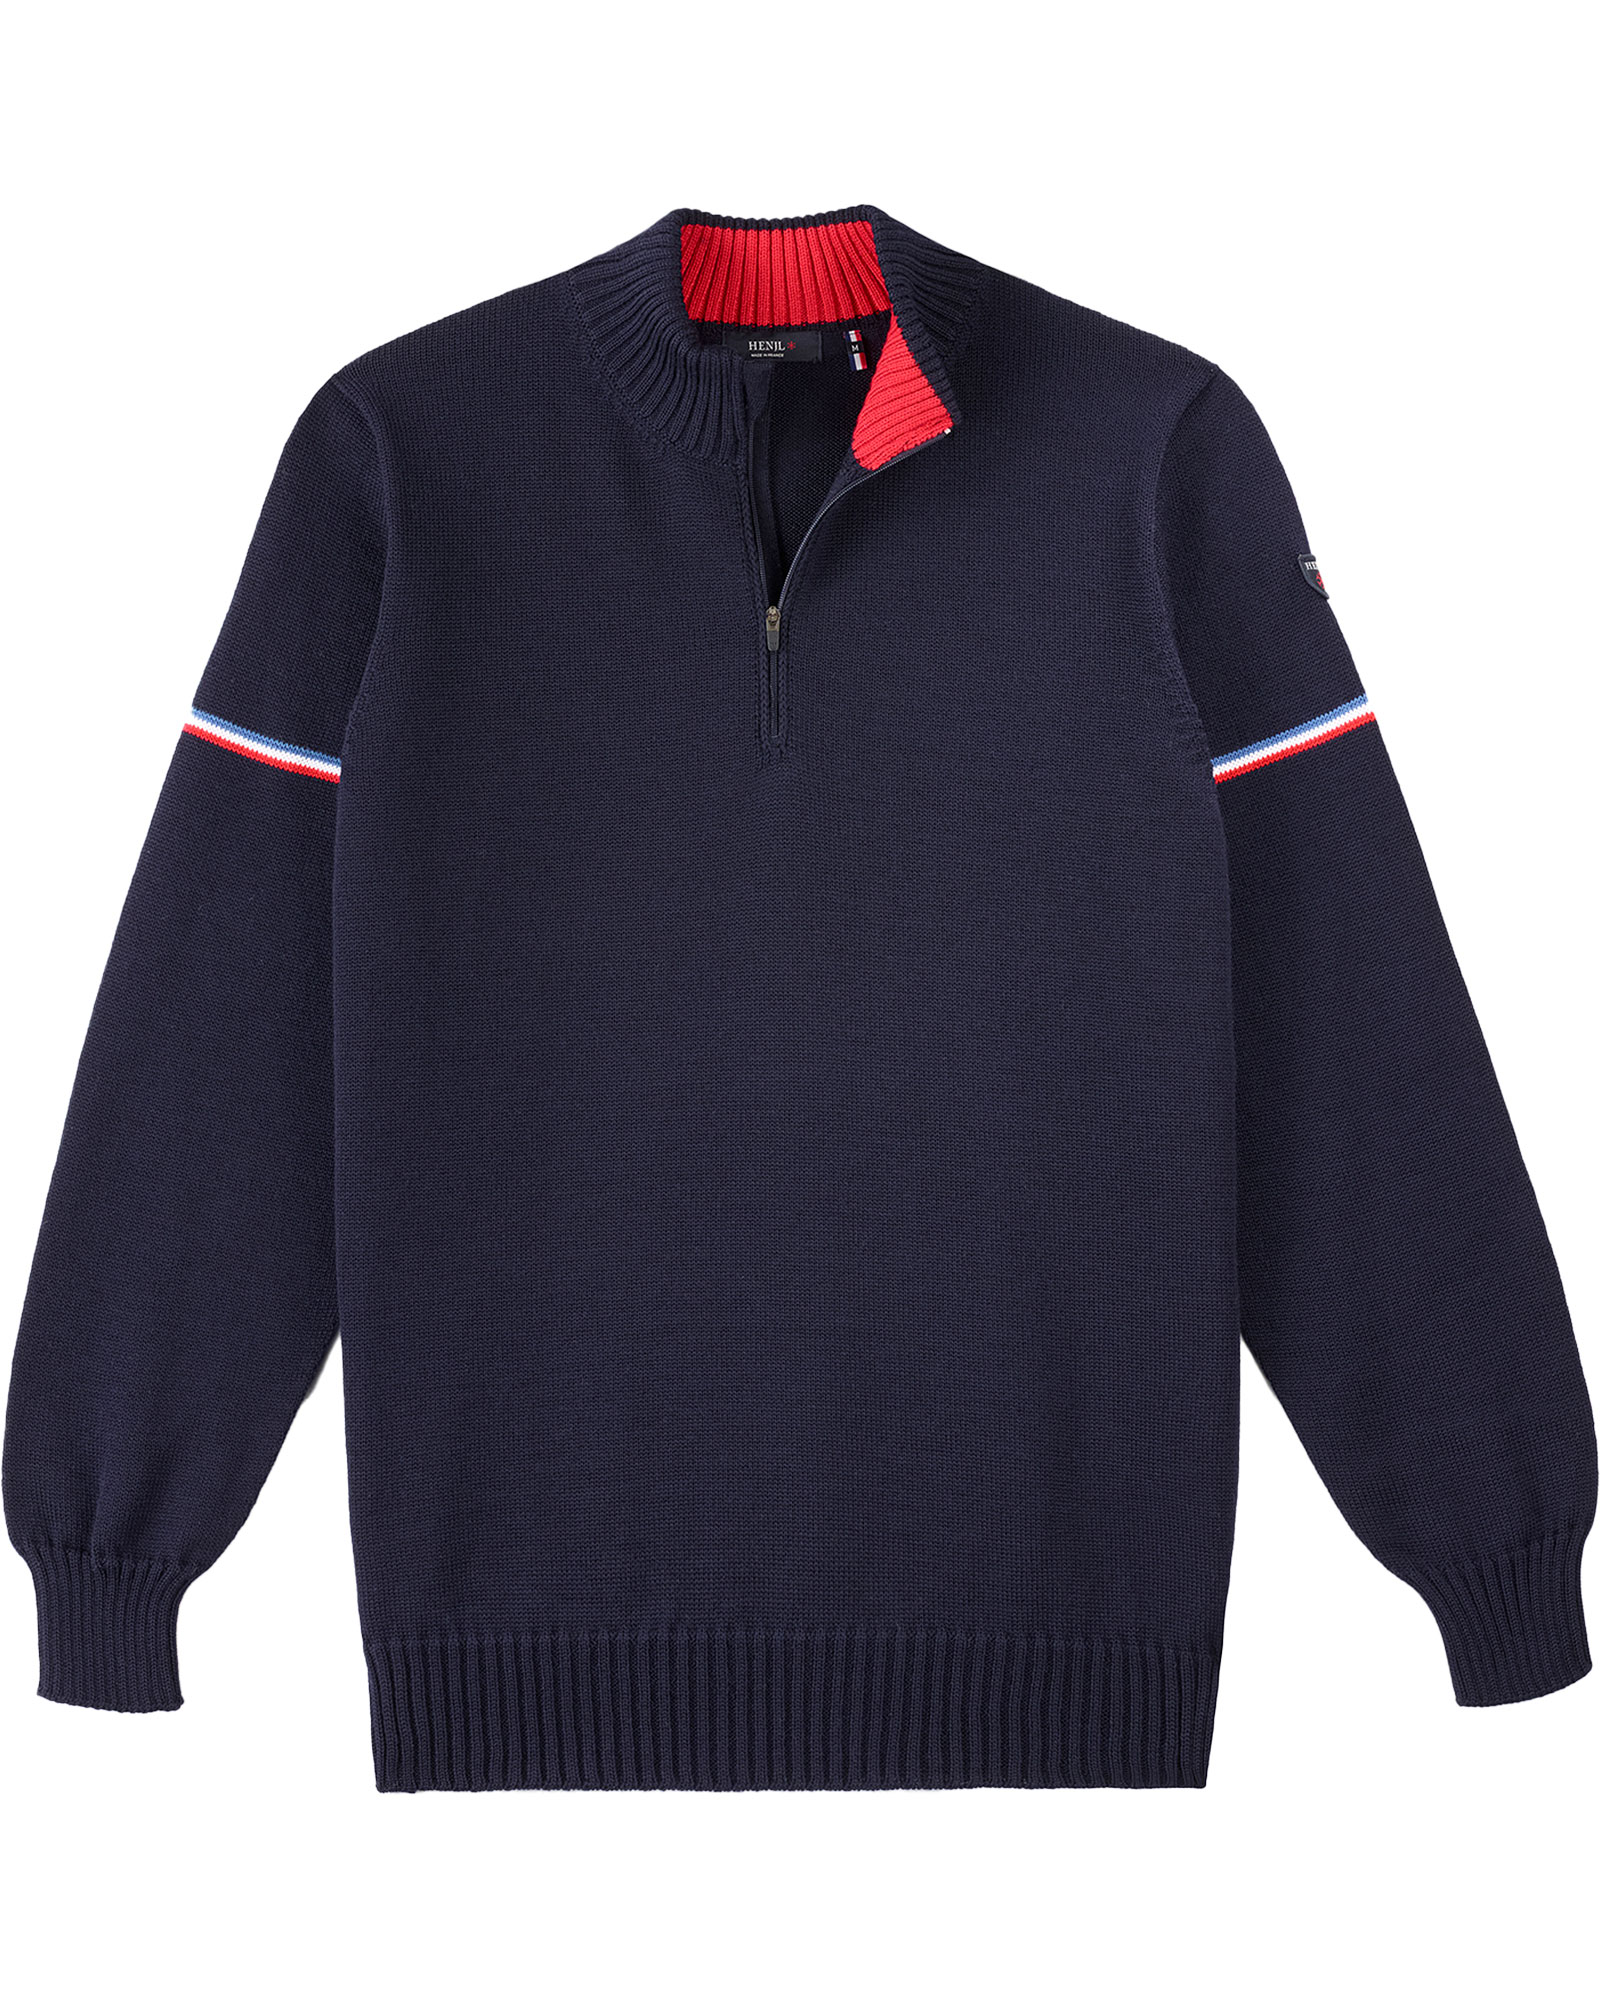 Henjl Men’s Dixon Sweater - Navy S